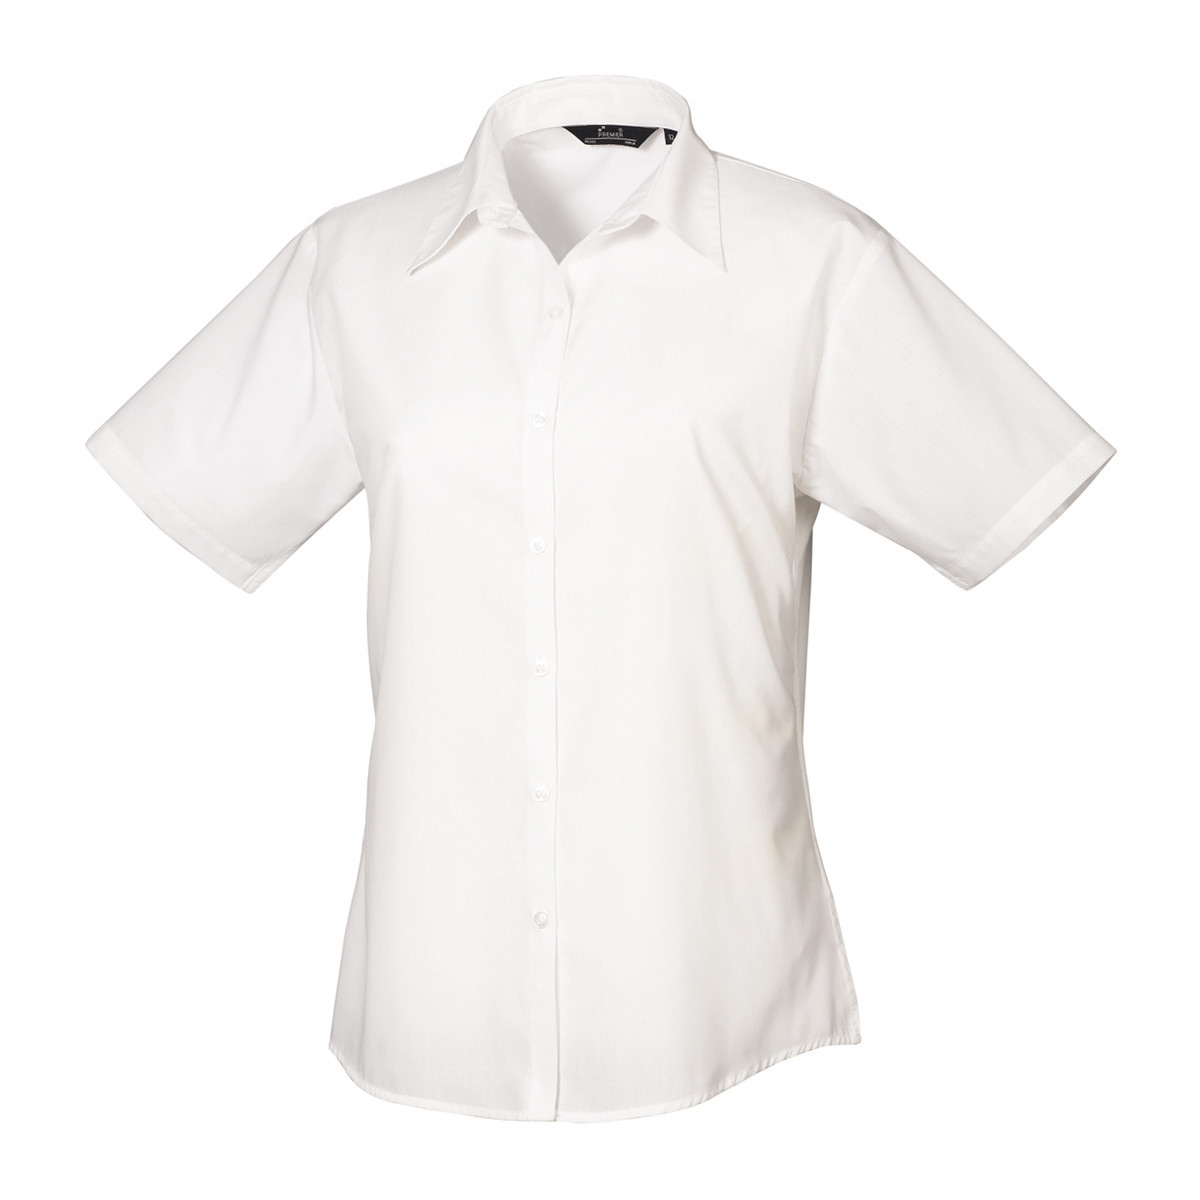 Vêtements Femme Chemises / Chemisiers Premier PR302 Blanc